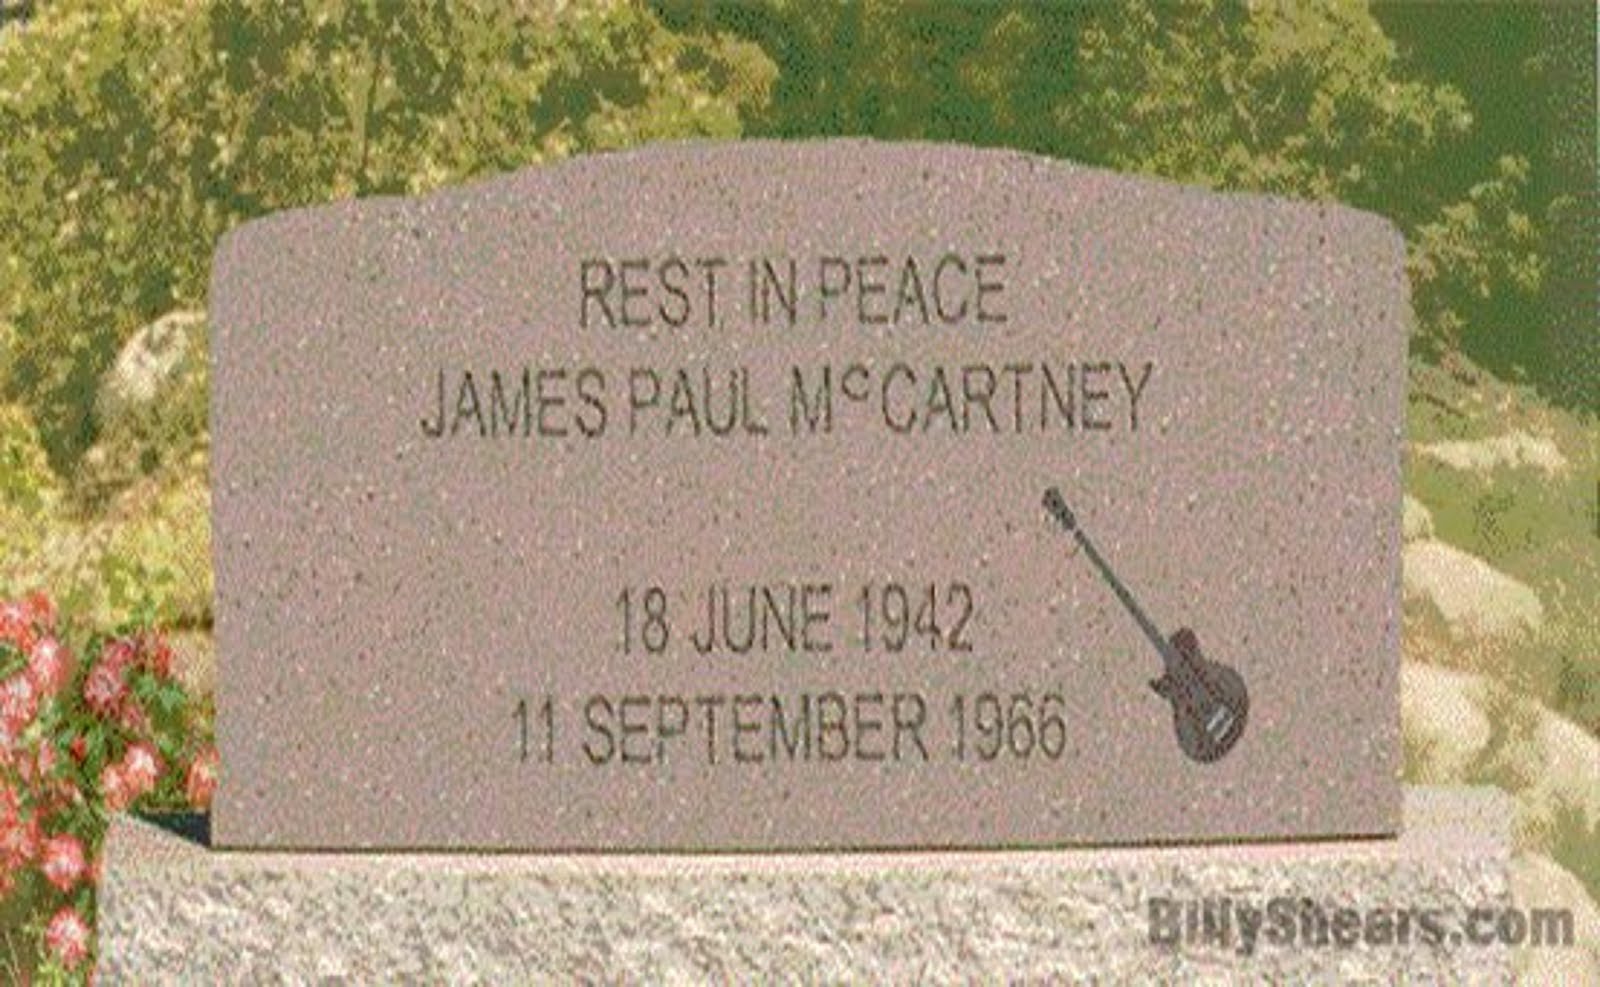 (BEATLE) - JAMES PAUL McCARTNEY - 18 JUNE 1942 - 11 SEPTEMBER 1966